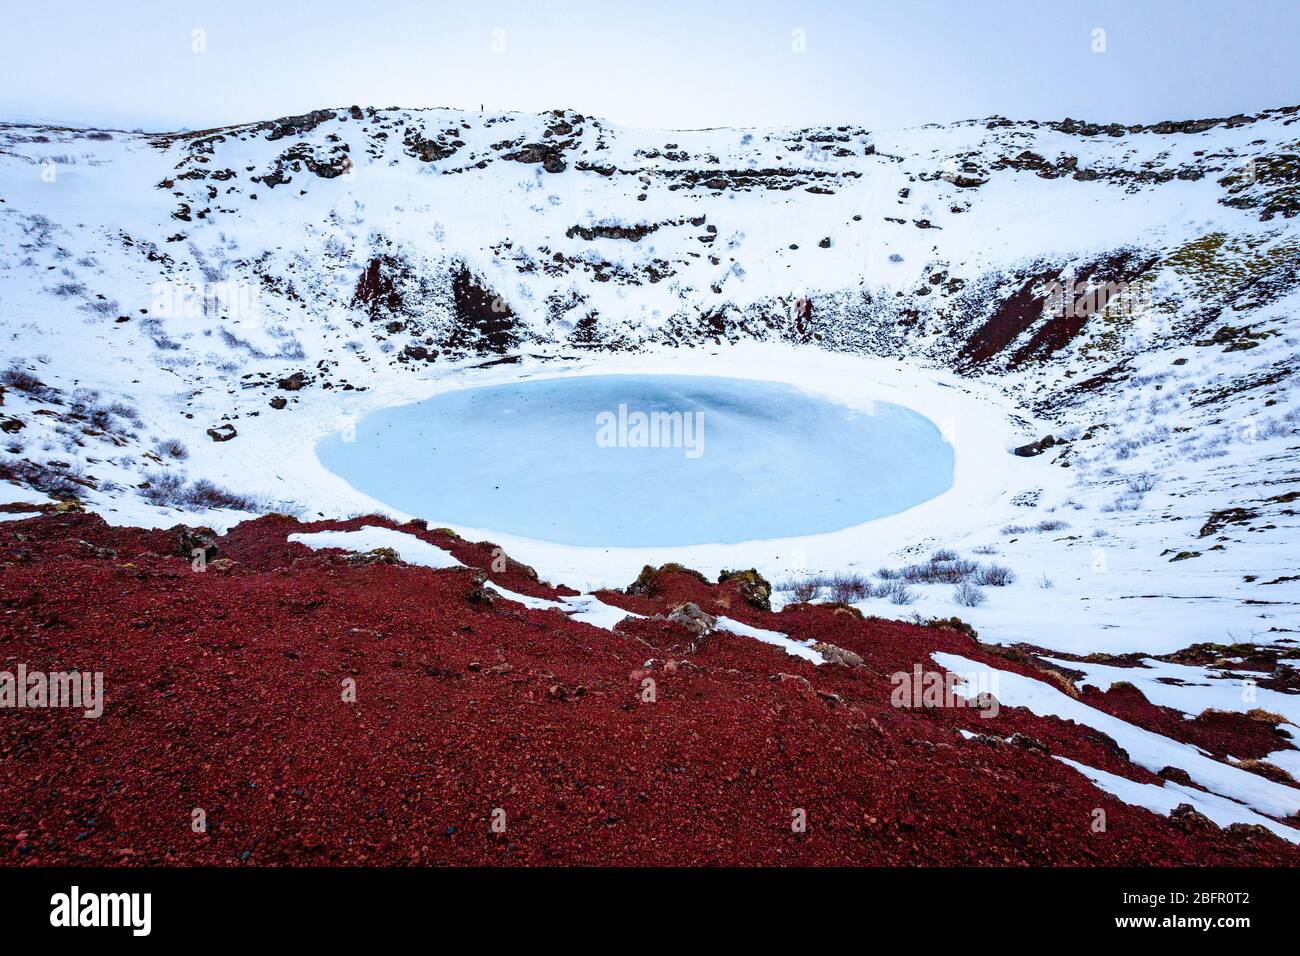 Kerid vulkanischen Krater See in Island, gefrorenen blau an einem verschneiten Tag im Winter mit rotem Vulkangestein im Vordergrund Stockfoto